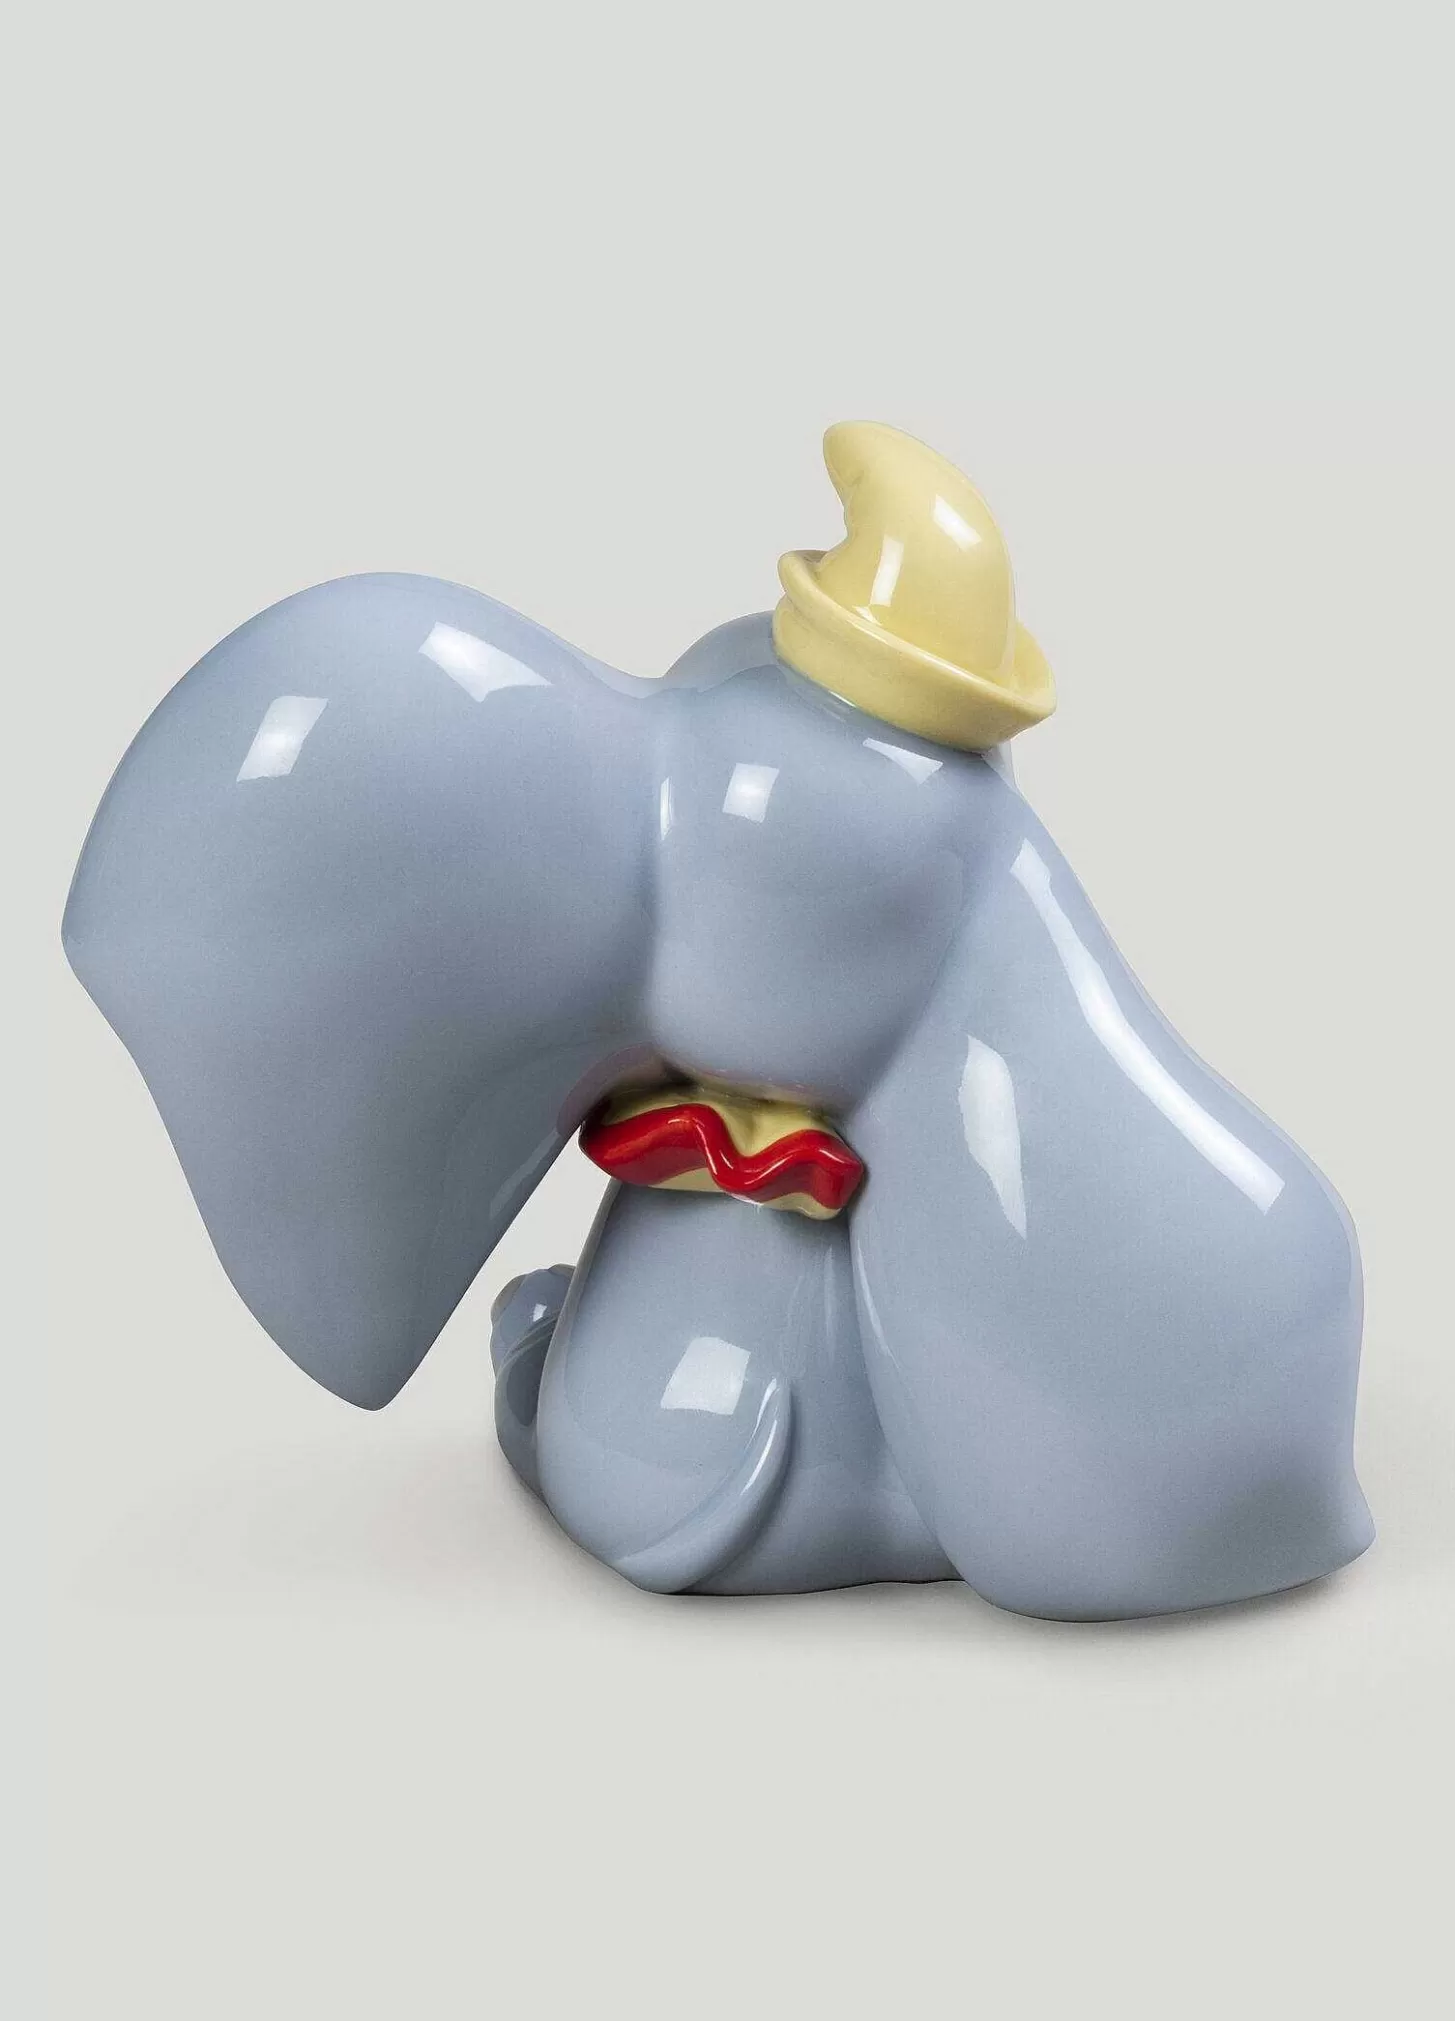 Lladró Dumbo Figurine^ Licenses